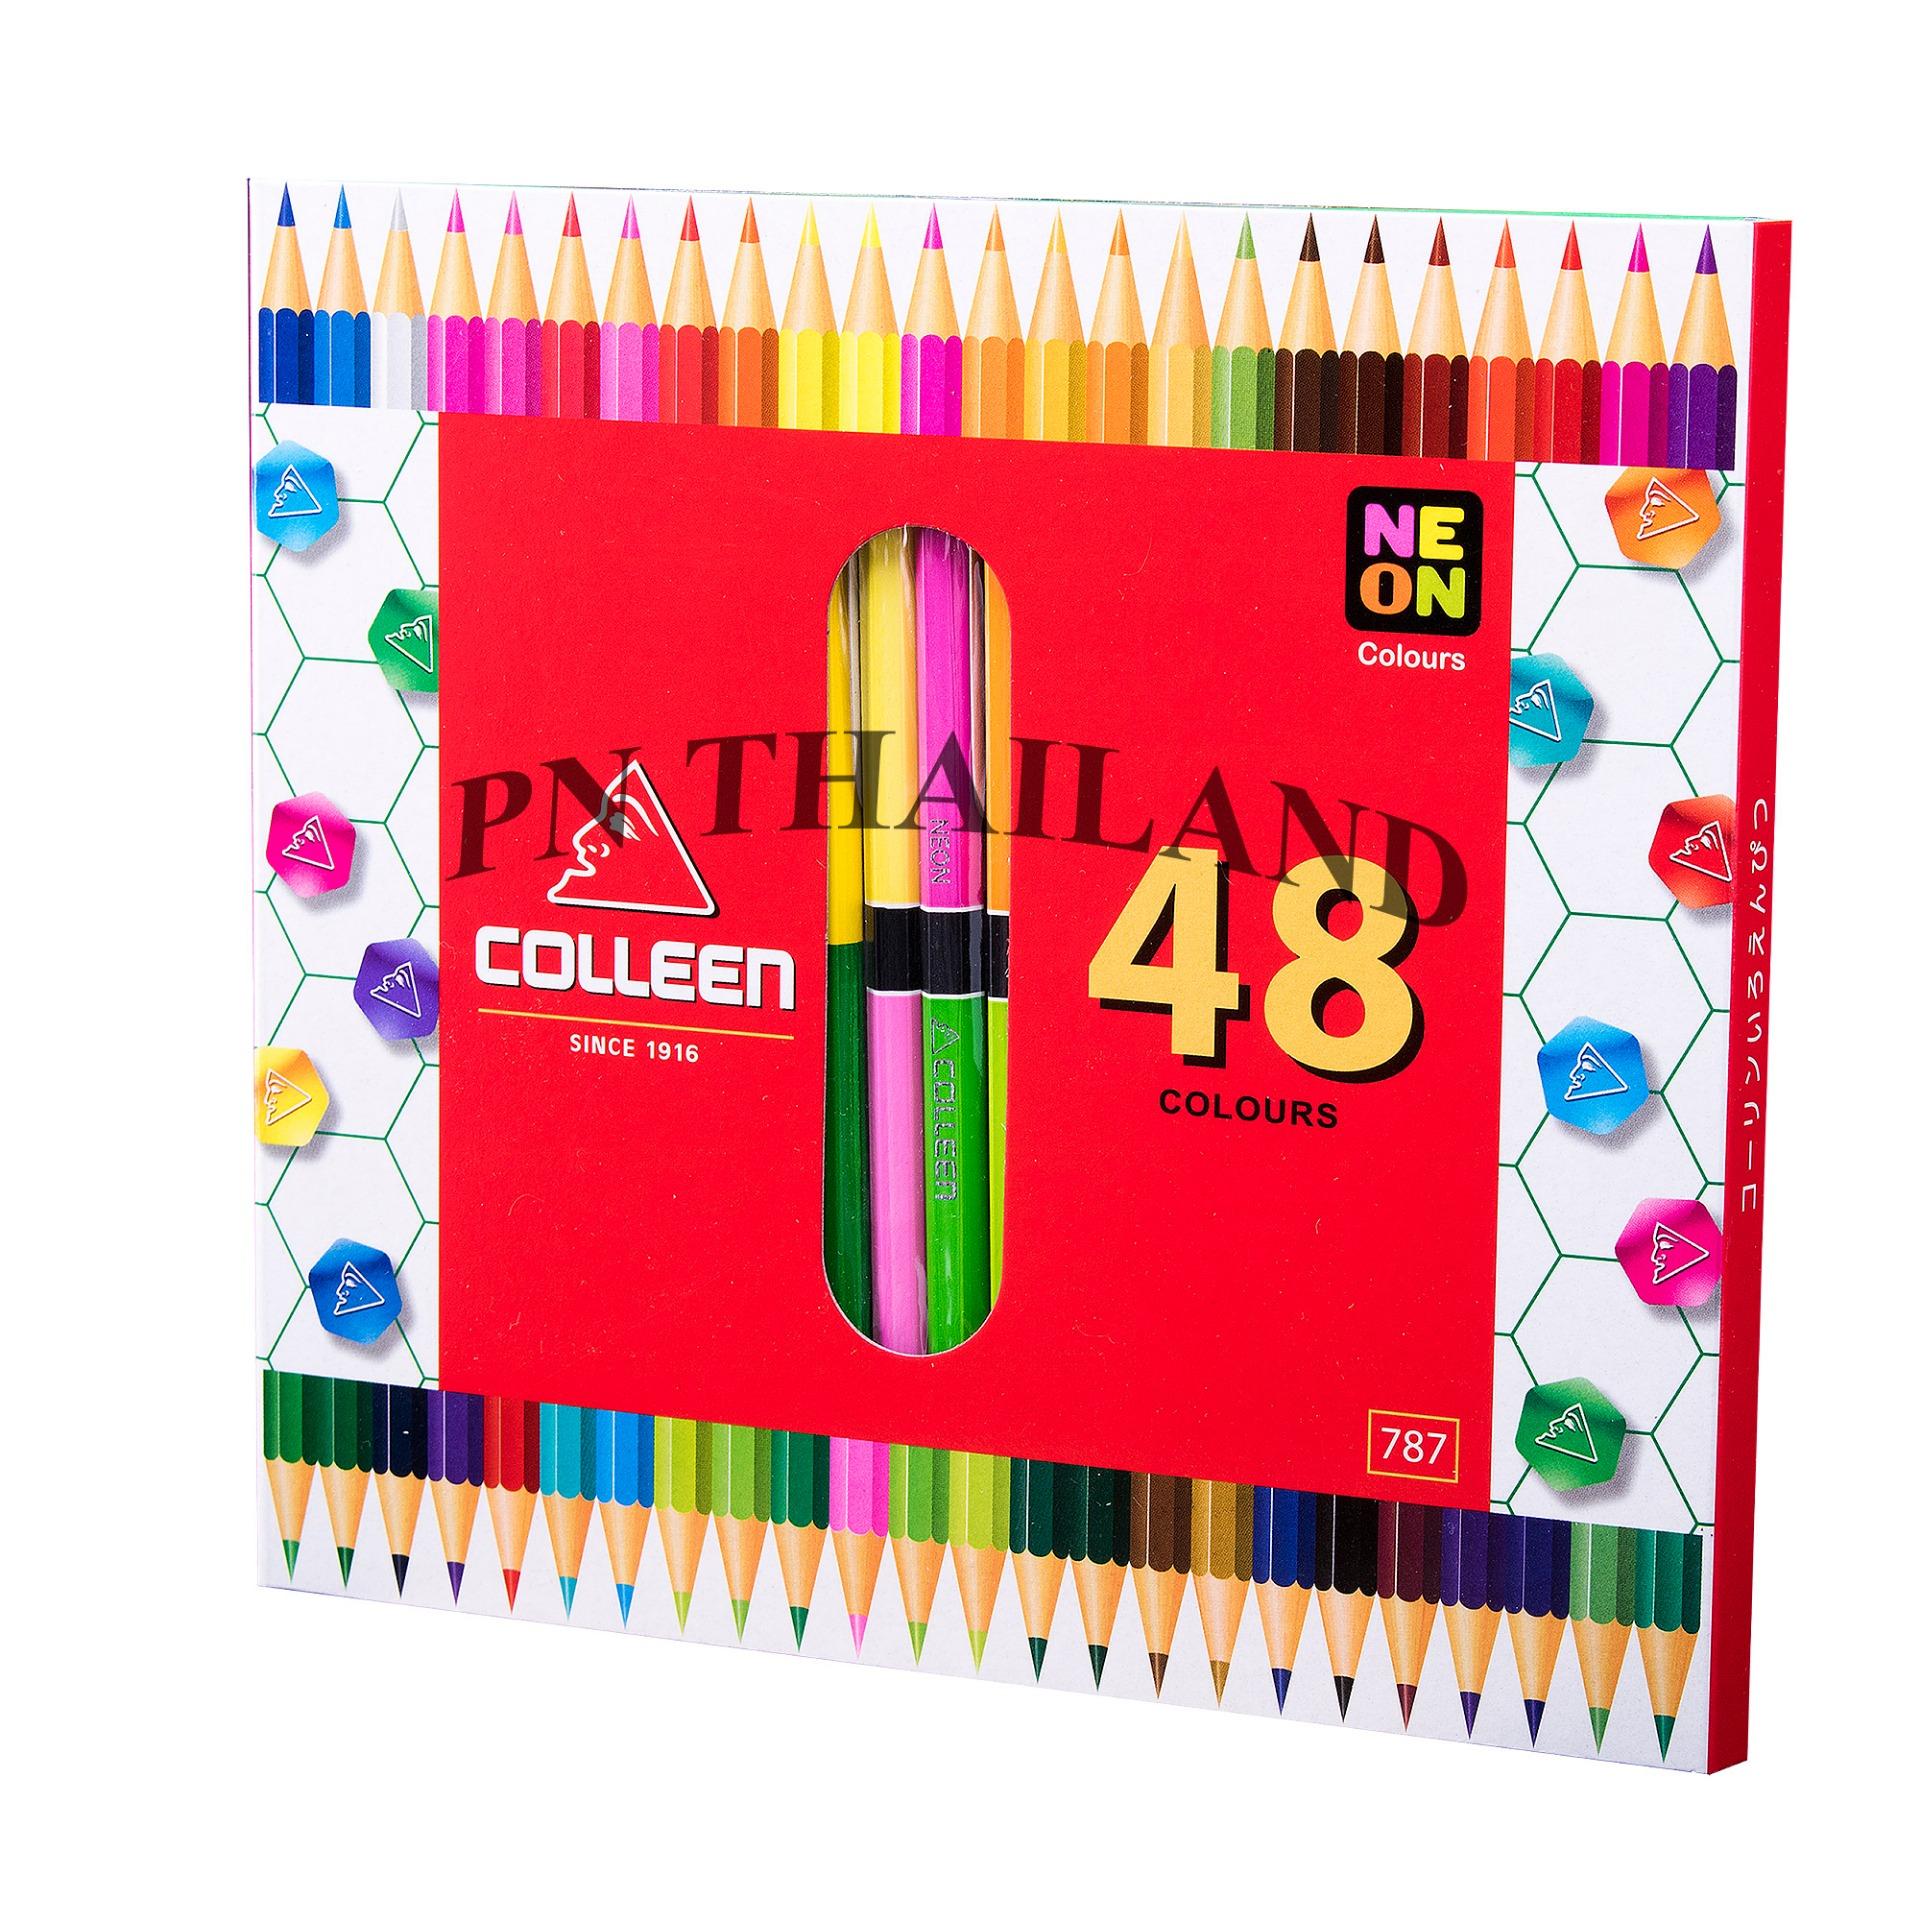 Colleen ดินสอสีไม้ คอลลีน 2 หัว 24 แท่ง 48 สี รุ่น787 สีธรรมดา+นีออน(สะท้อนแสง)